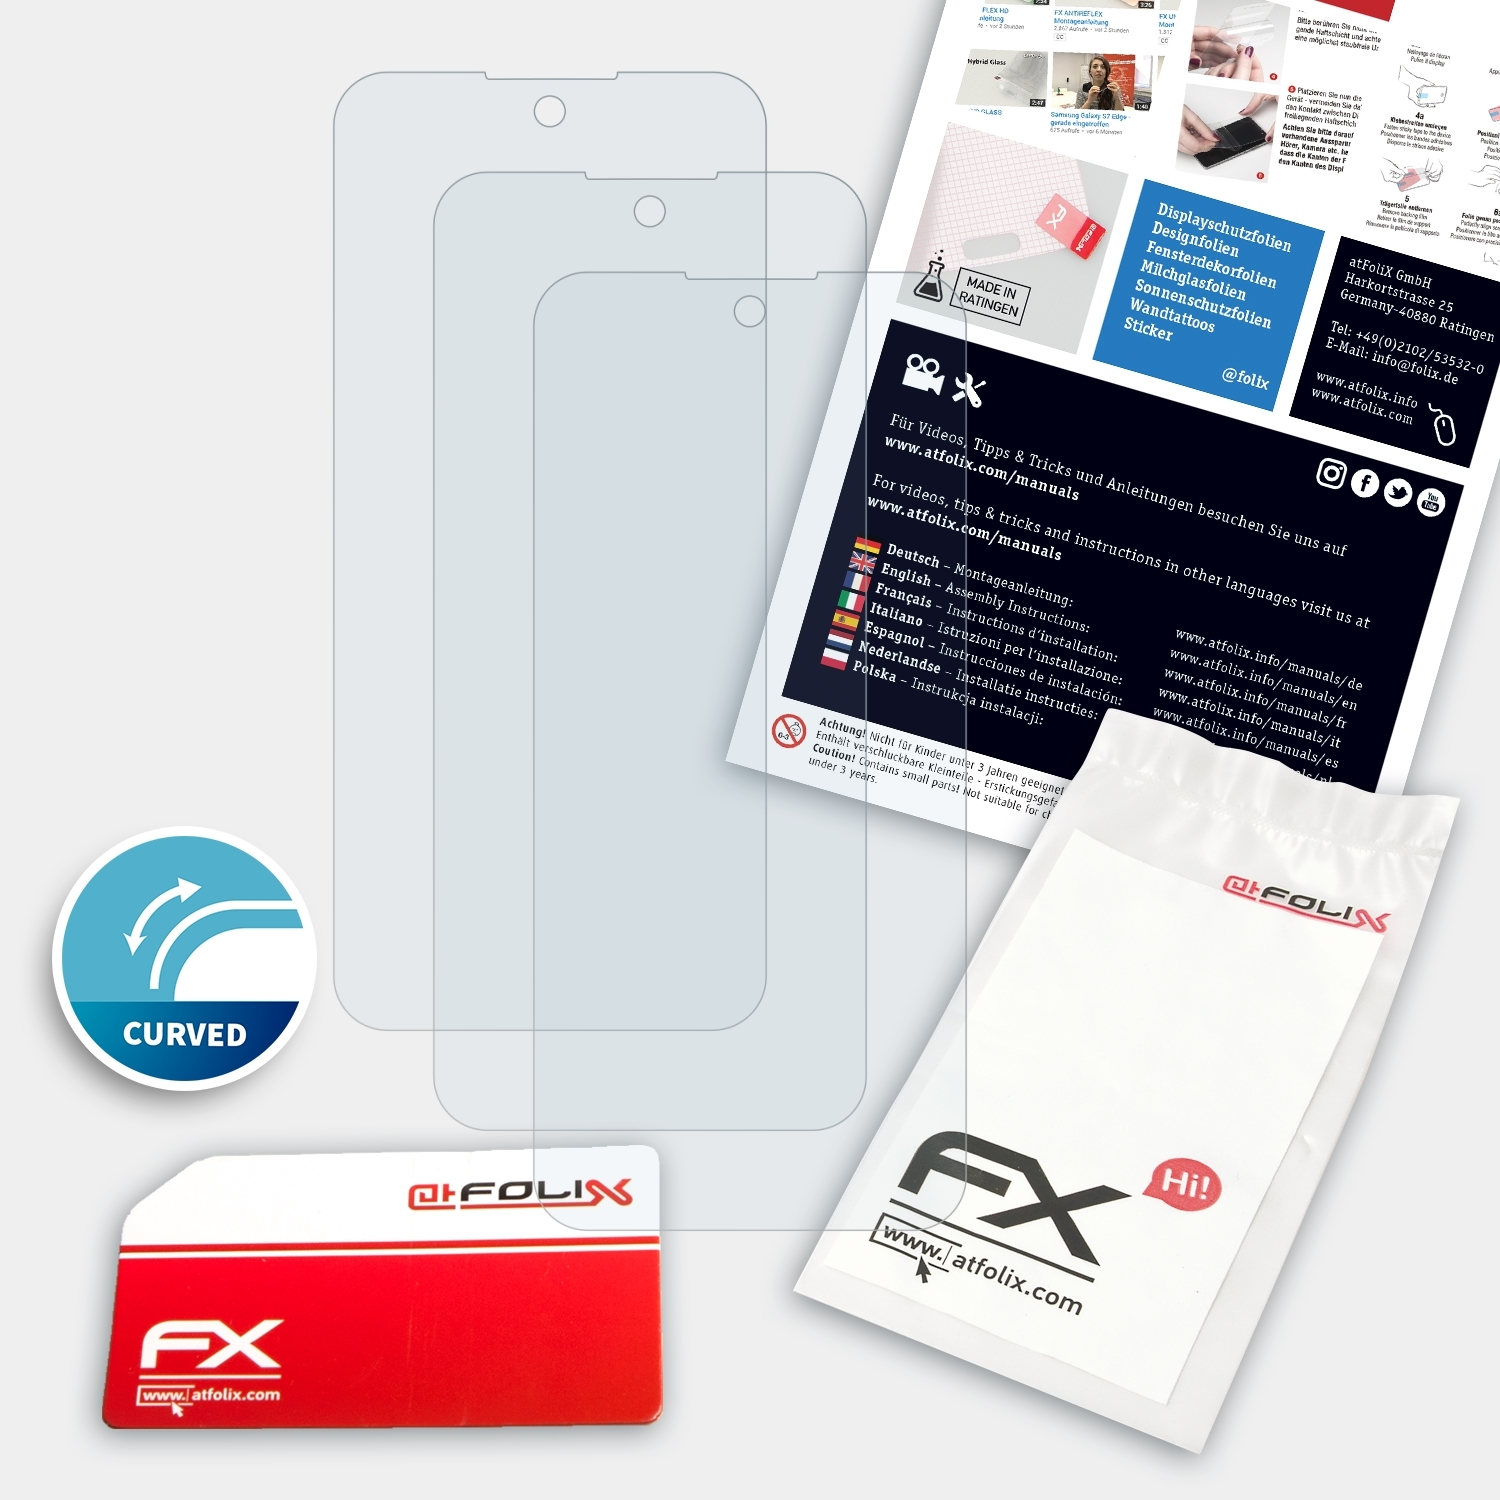 ATFOLIX 3x K52) FX-ActiFleX LG Displayschutz(für